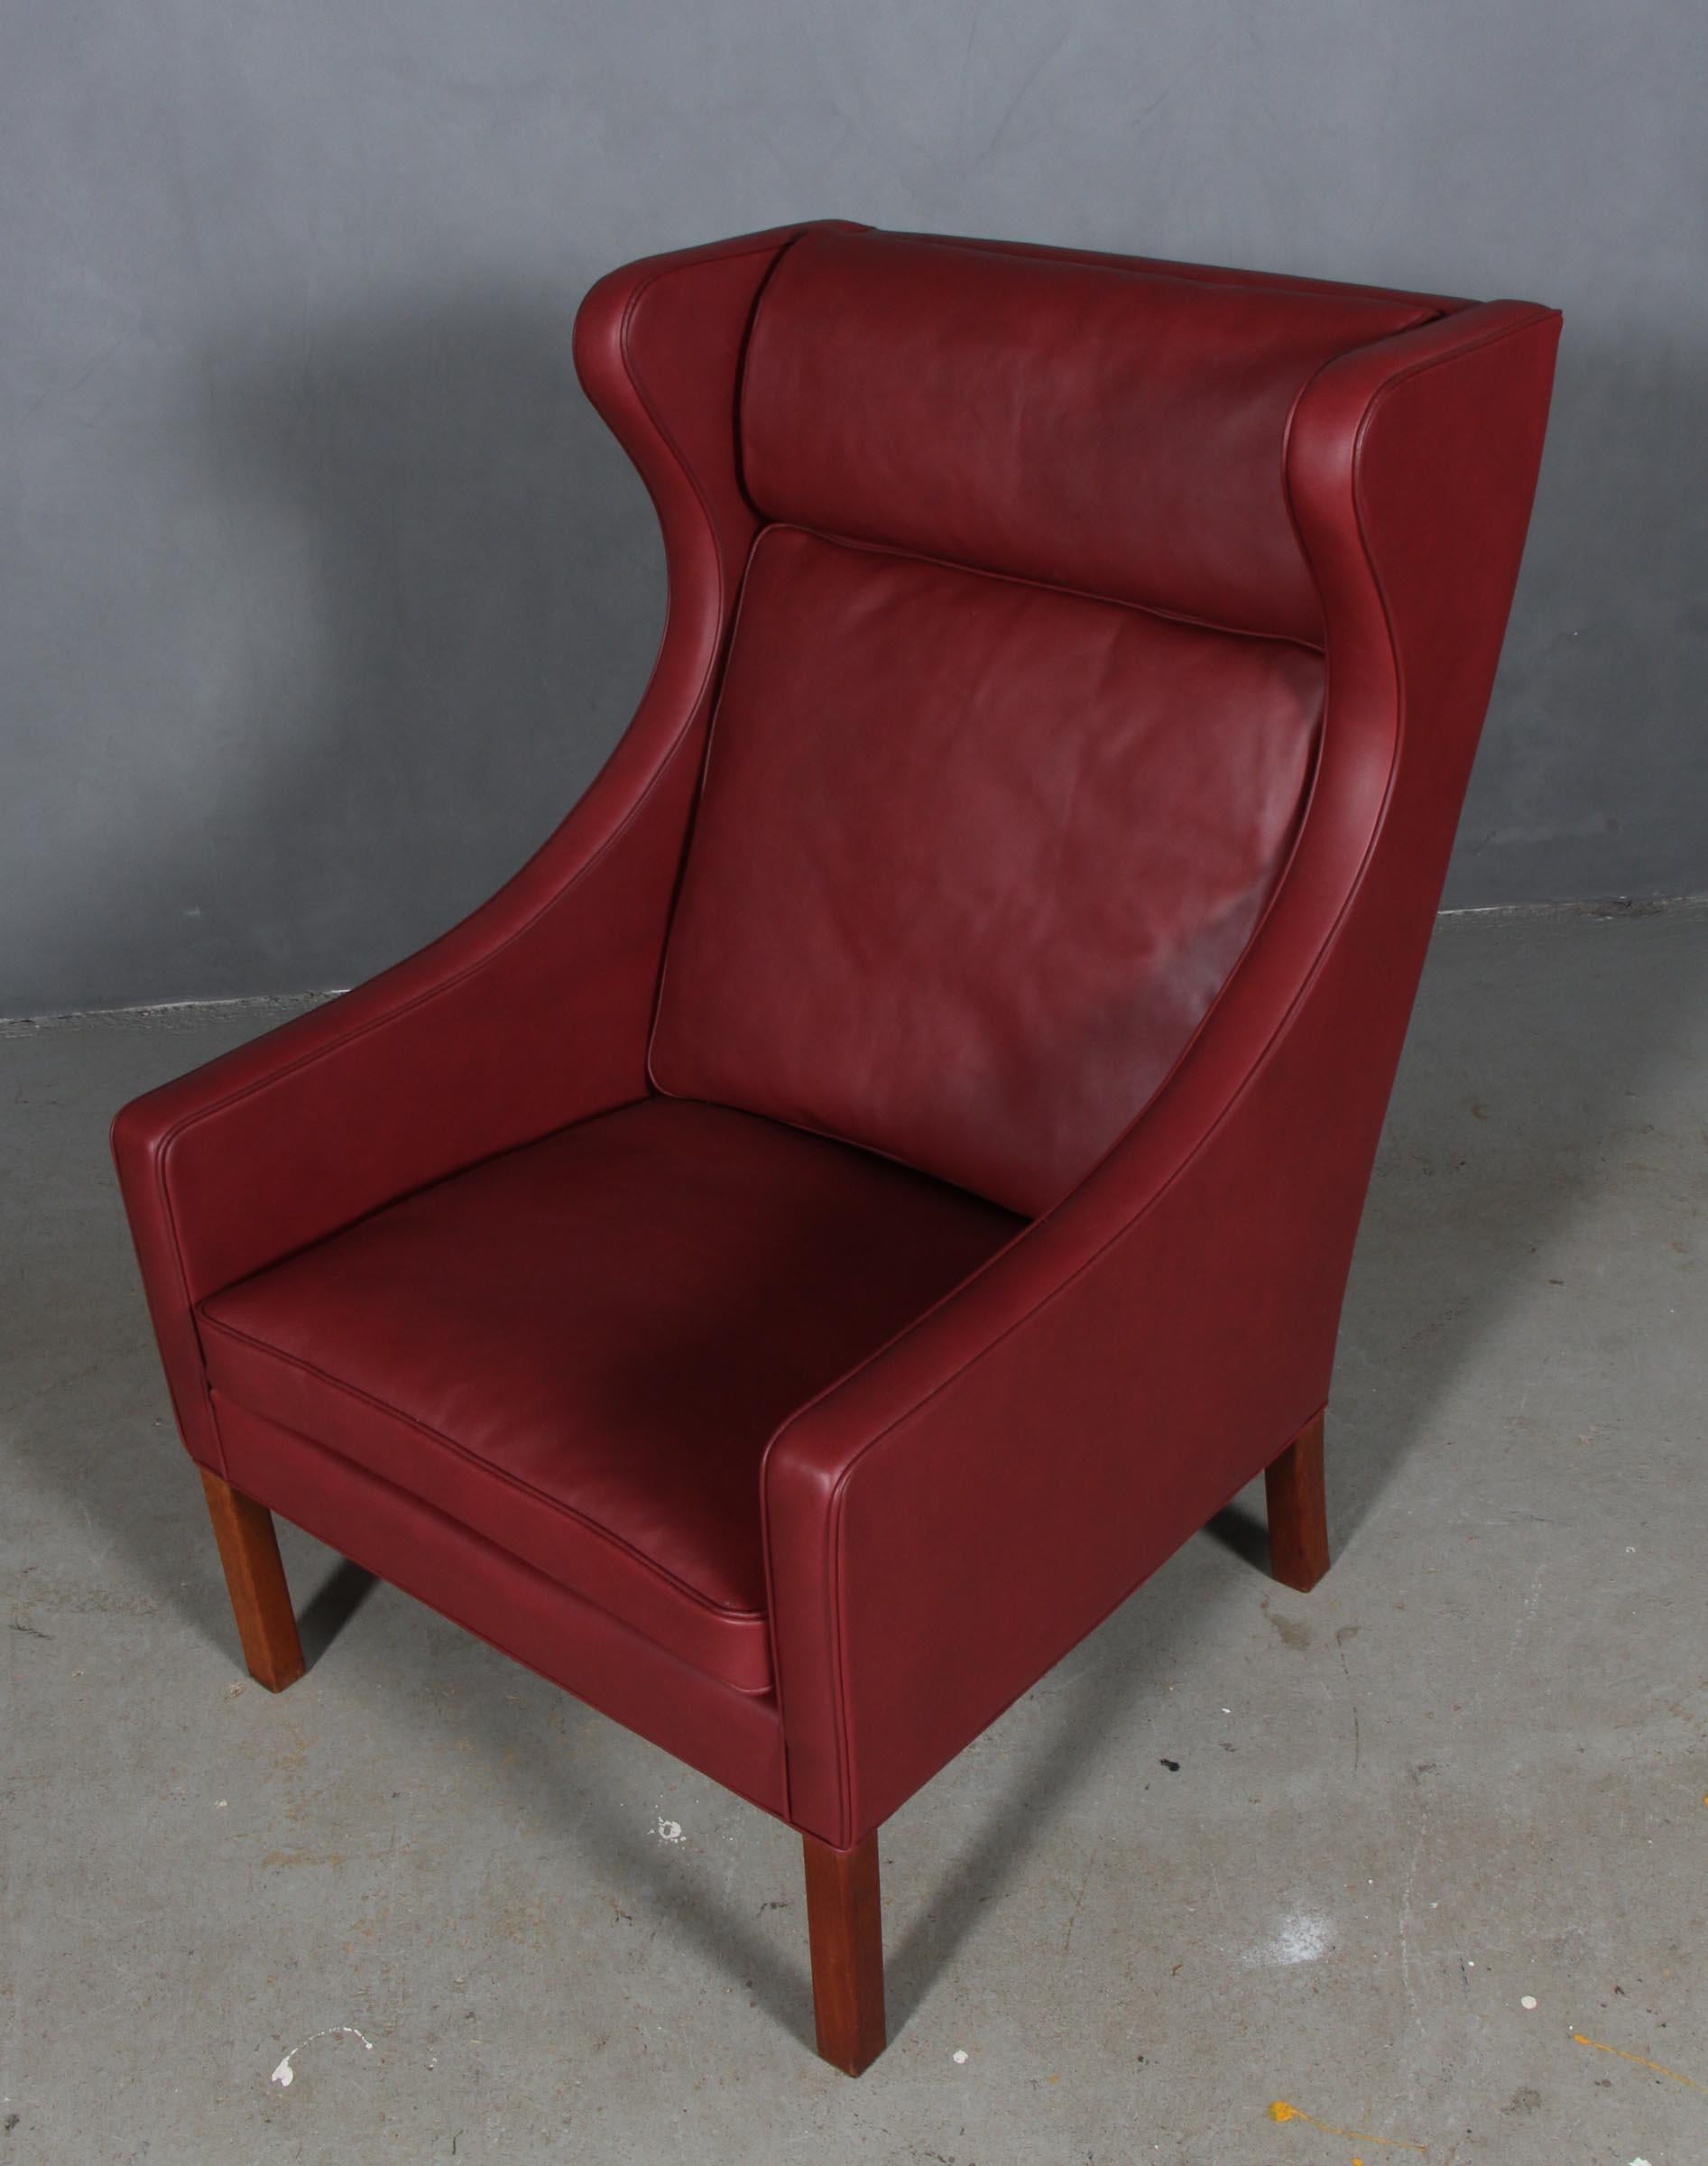 Chaise à oreilles Børge Mogensen nouvellement tapissée de cuir d'élégance rouge indien.

Pieds en teck.

Modèle 2204, fabriqué par Fredericia Furniture.